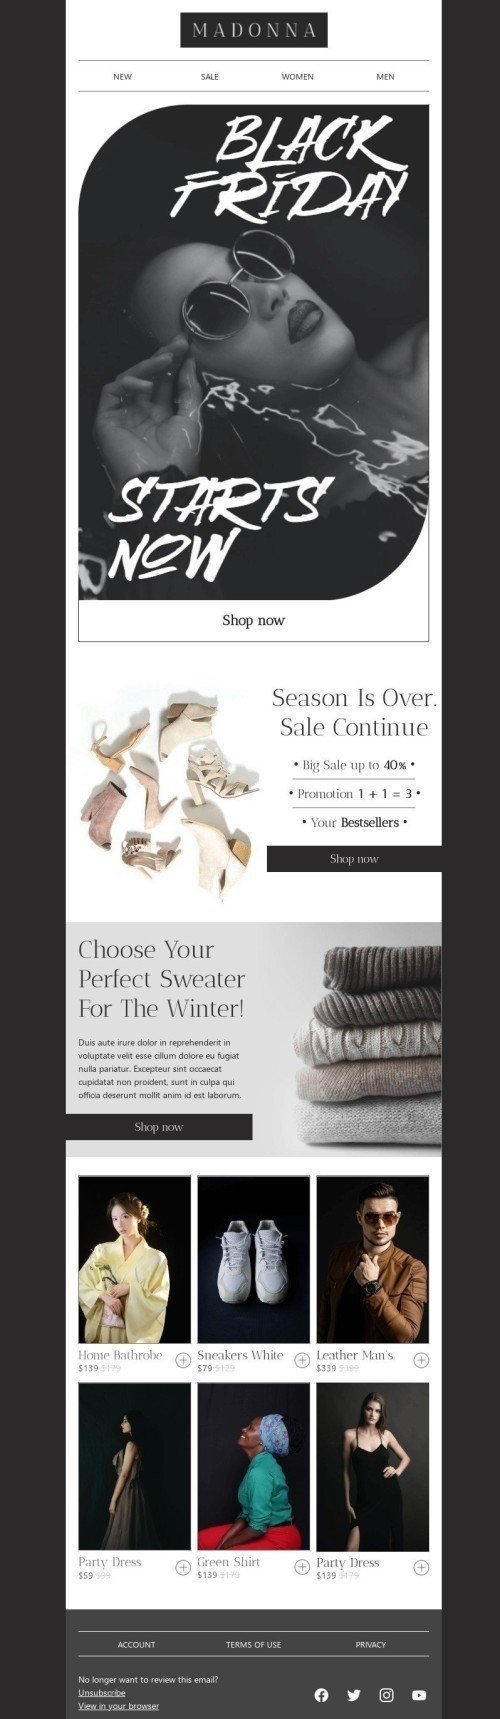 Шаблон письма к празднику Черная пятница «Выбери свой идеальный свитер» для индустрии «Мода» мобильный вид